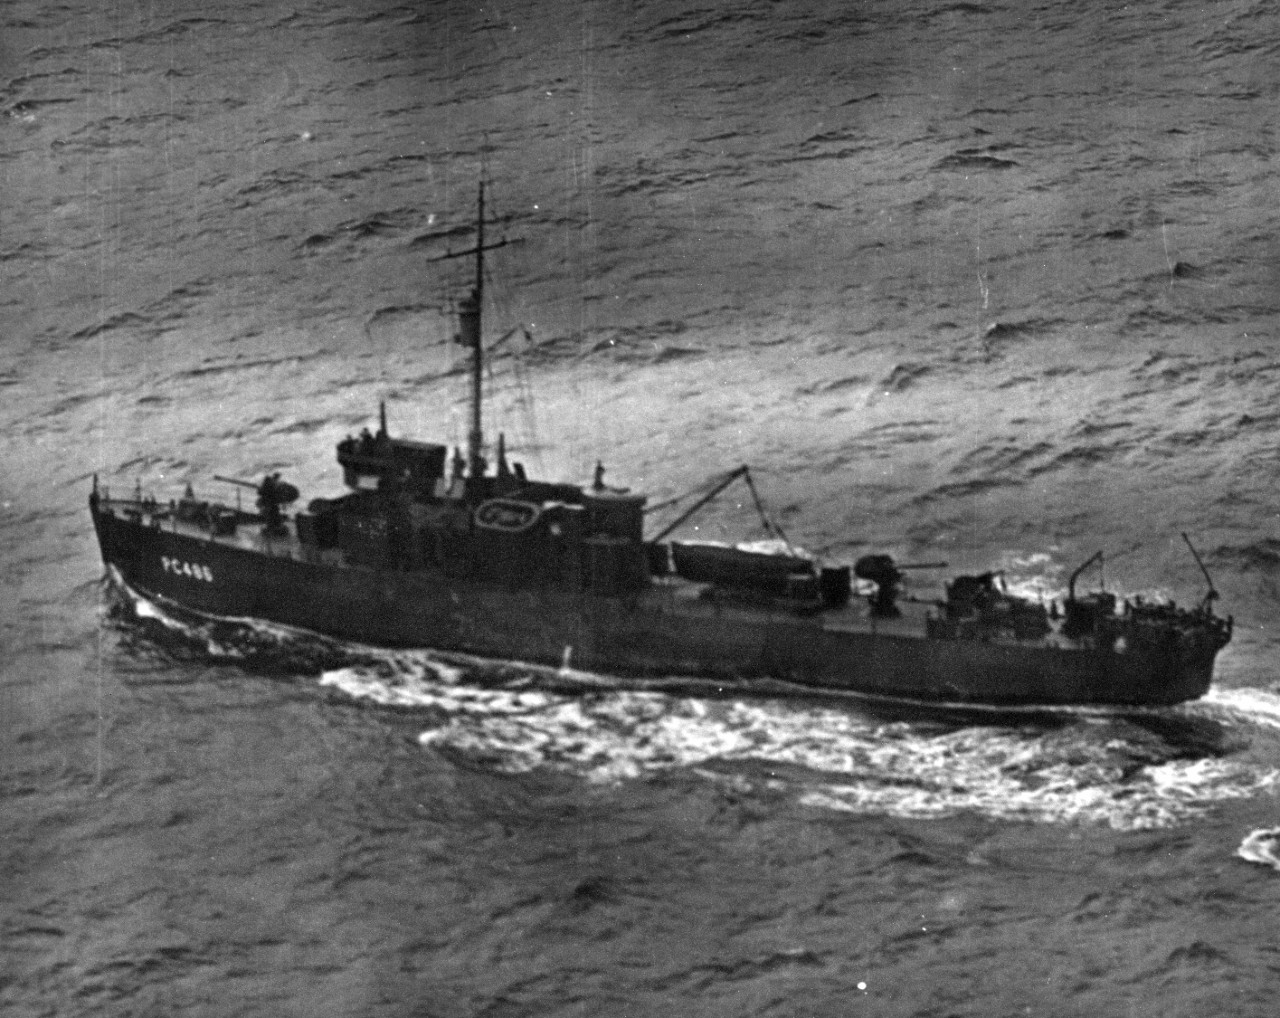 PC-486 (later USS Jasper) off the coast of Kiska Island, Alaska